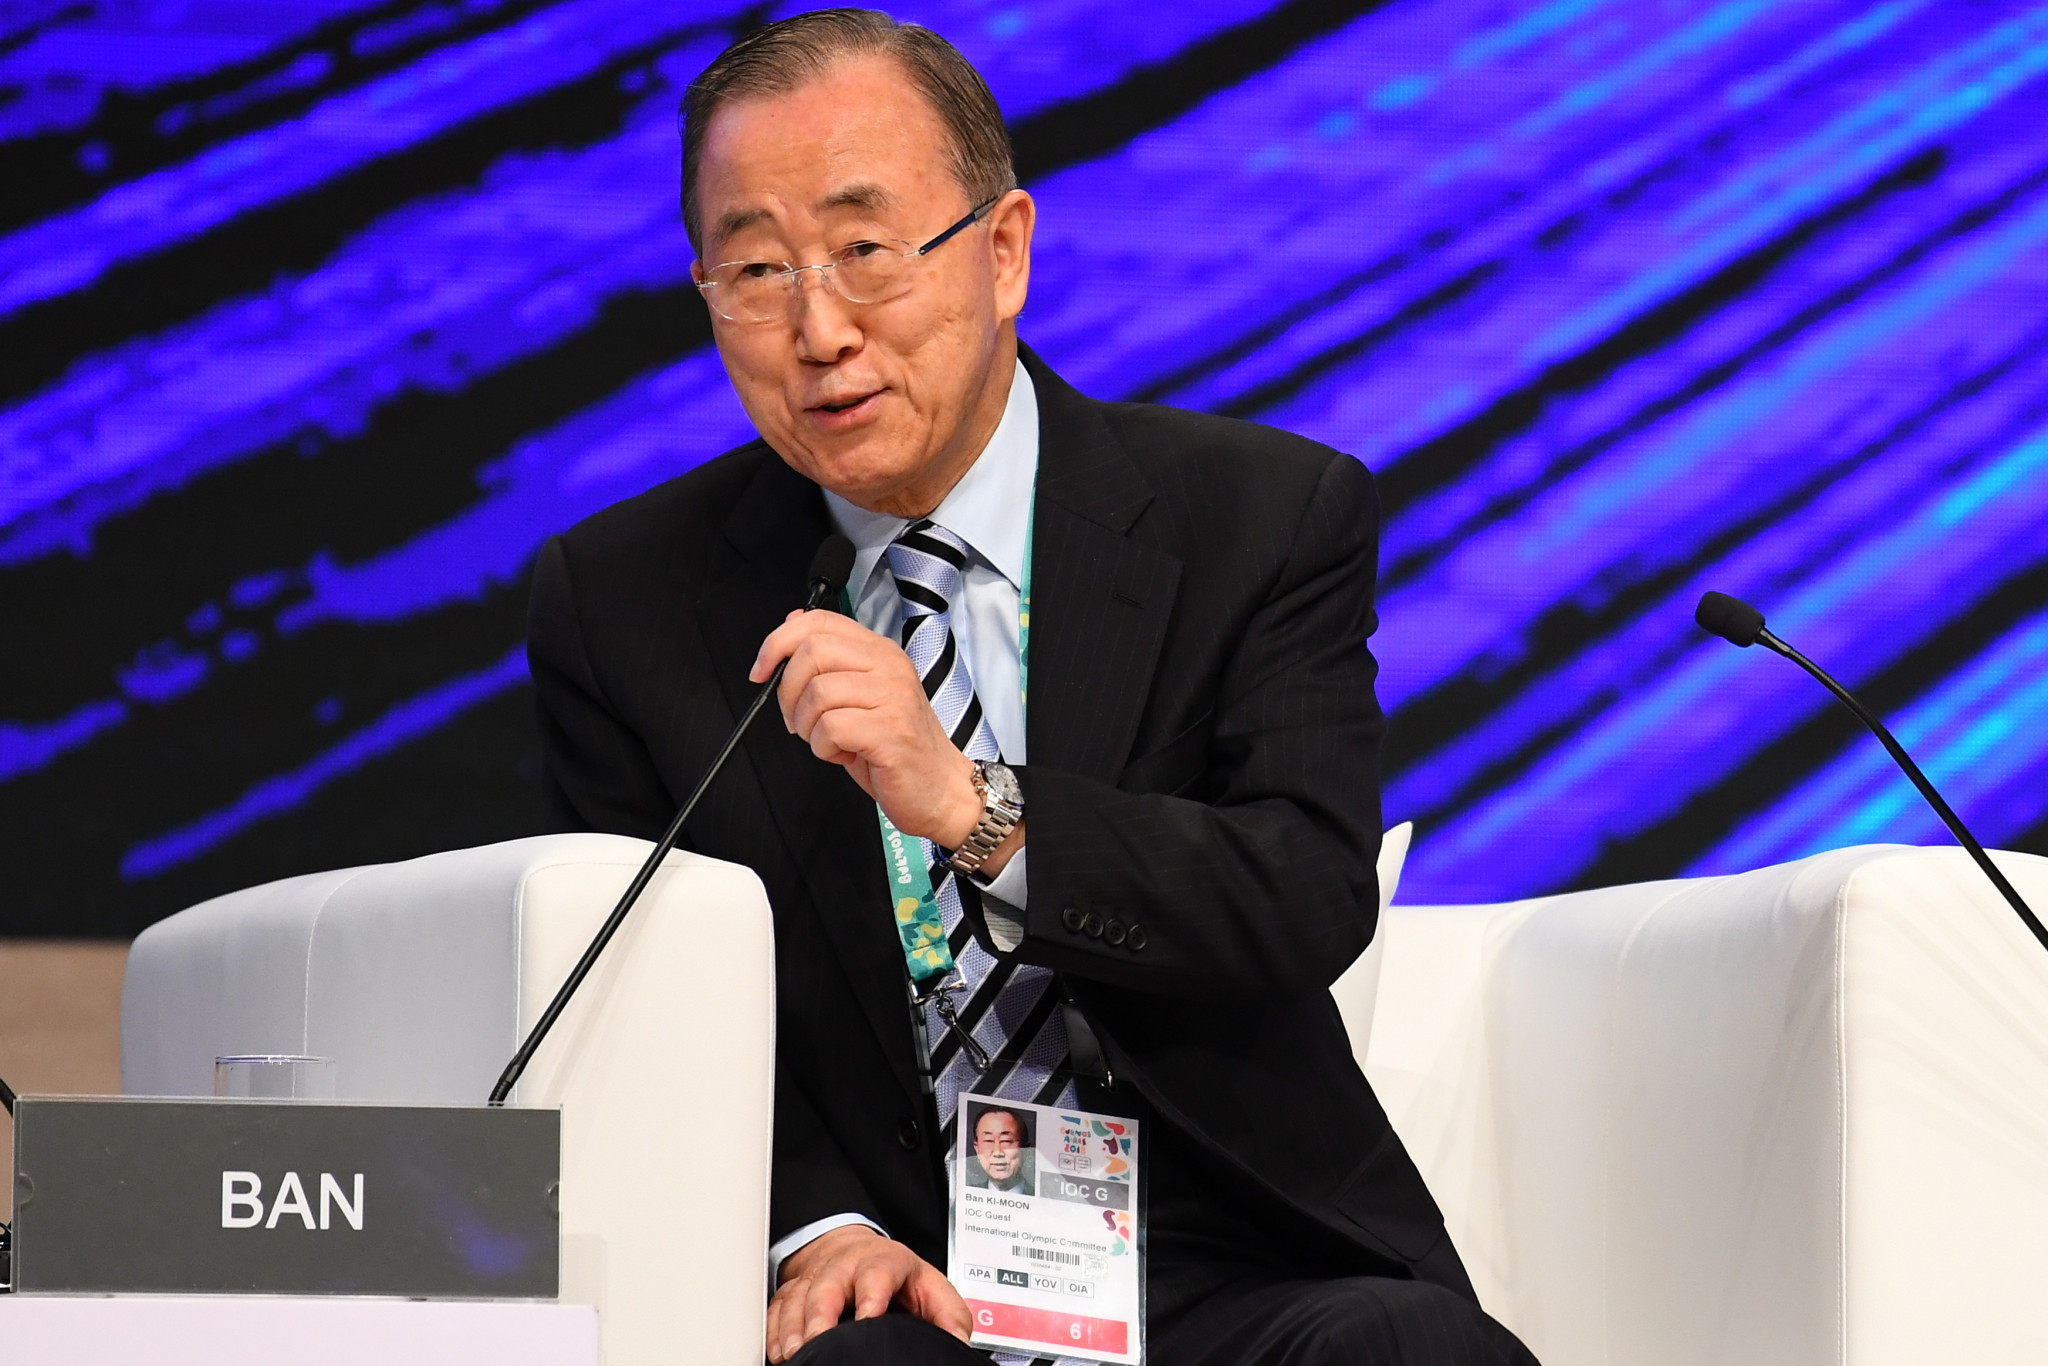 Le président de la commission d'éthique du CIO, Ban Ki-moon, a été directement adressé par écrit par le Congrès mondial ouïghour © Getty Images